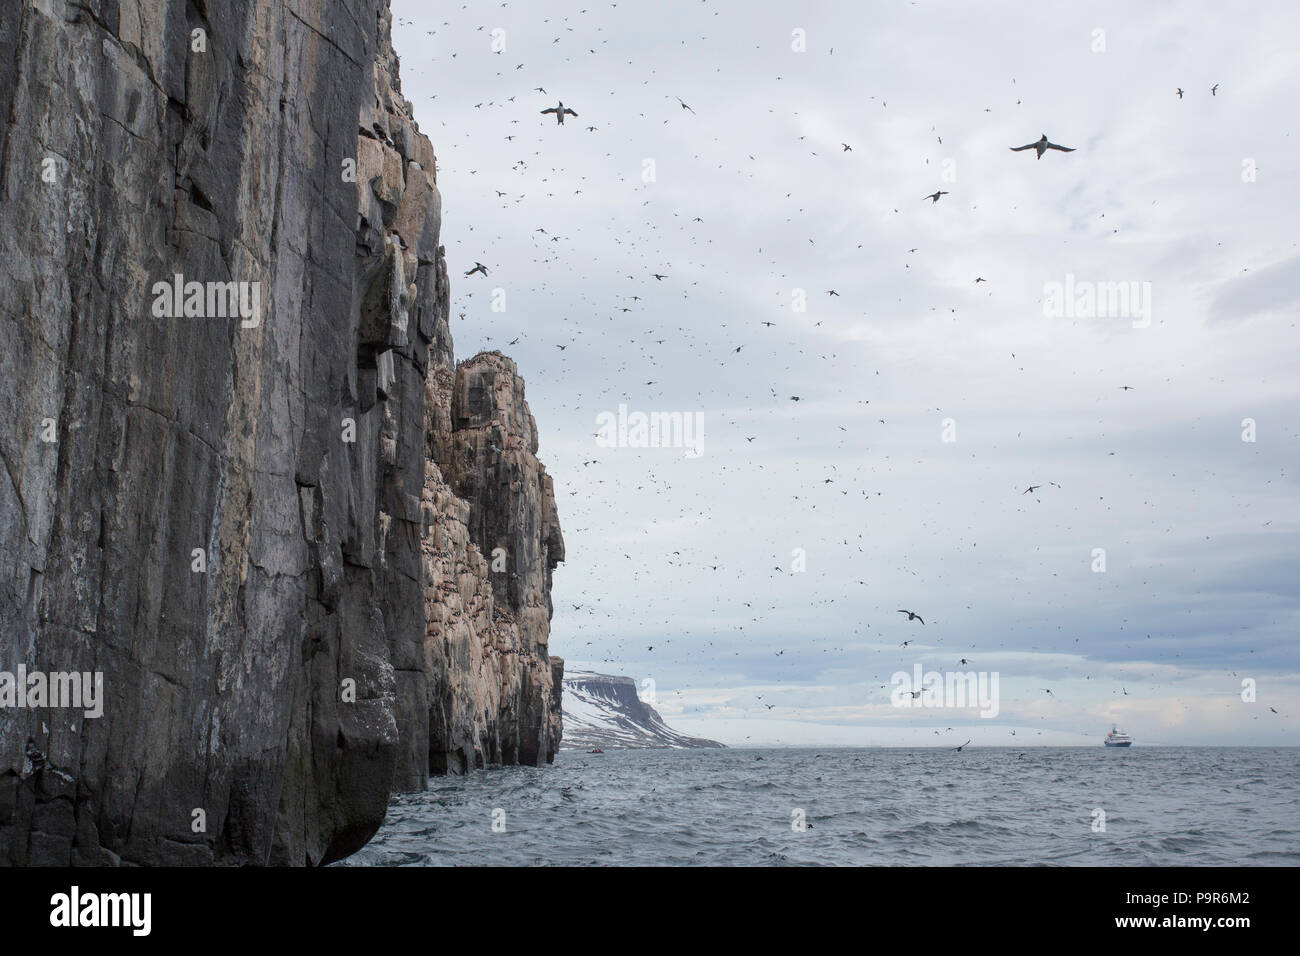 Abarrotado de aves árticas acantilados de Alkefjellet, Svalbard Foto de stock